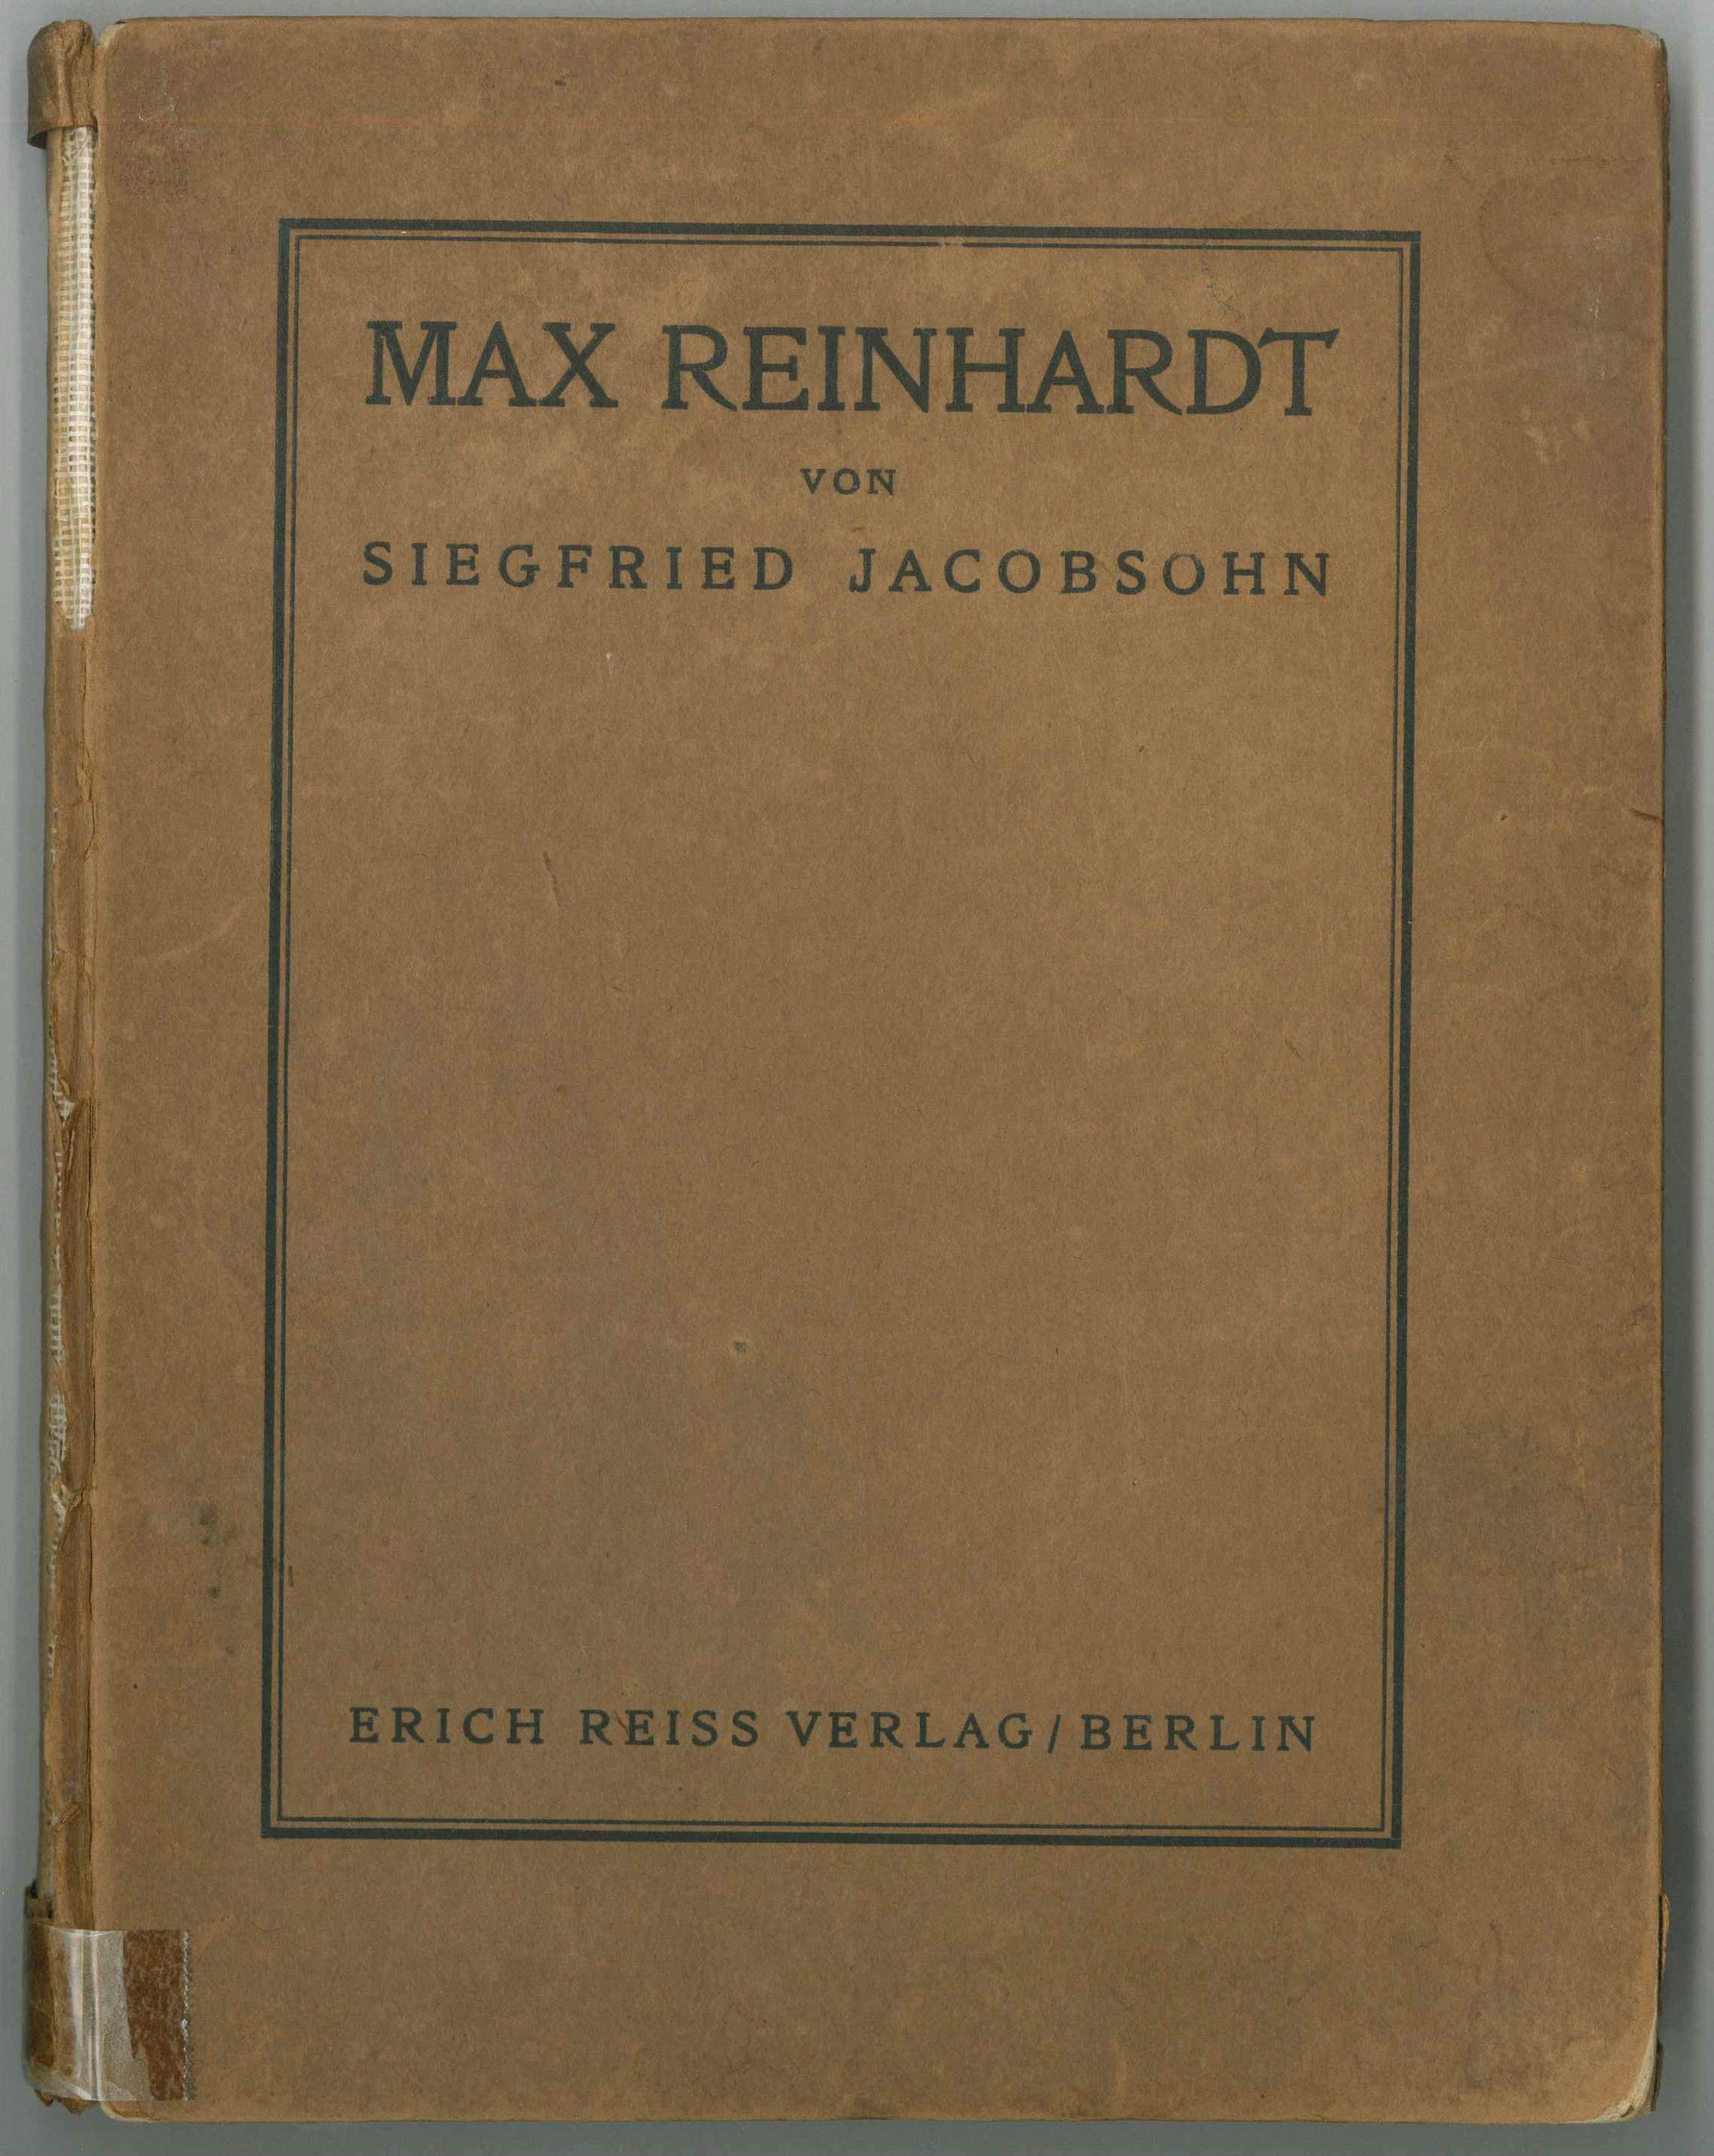 Siegfried Jacobsohn Max Reinhardt (Kurt Tucholsky Literaturmuseum CC BY-NC-SA)